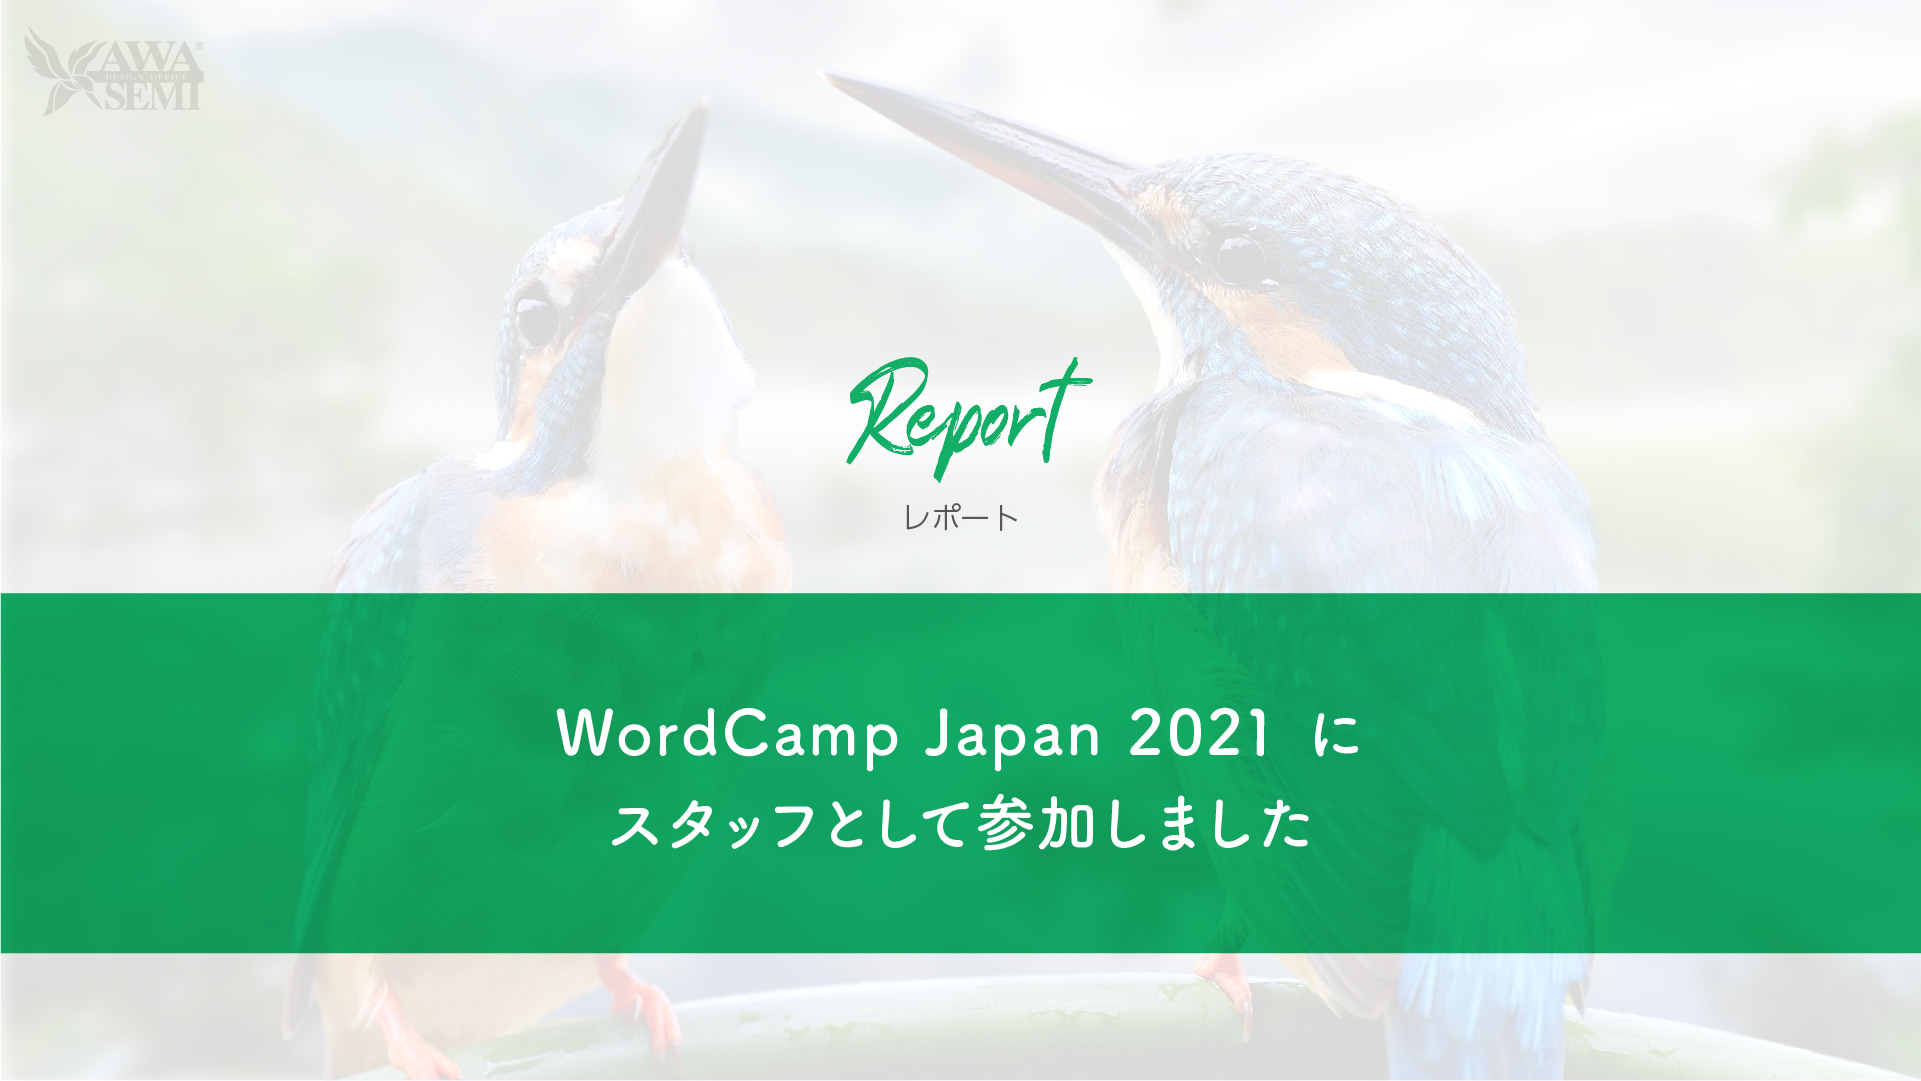 WordCamp Japan 2021 にスタッフとして参加しました